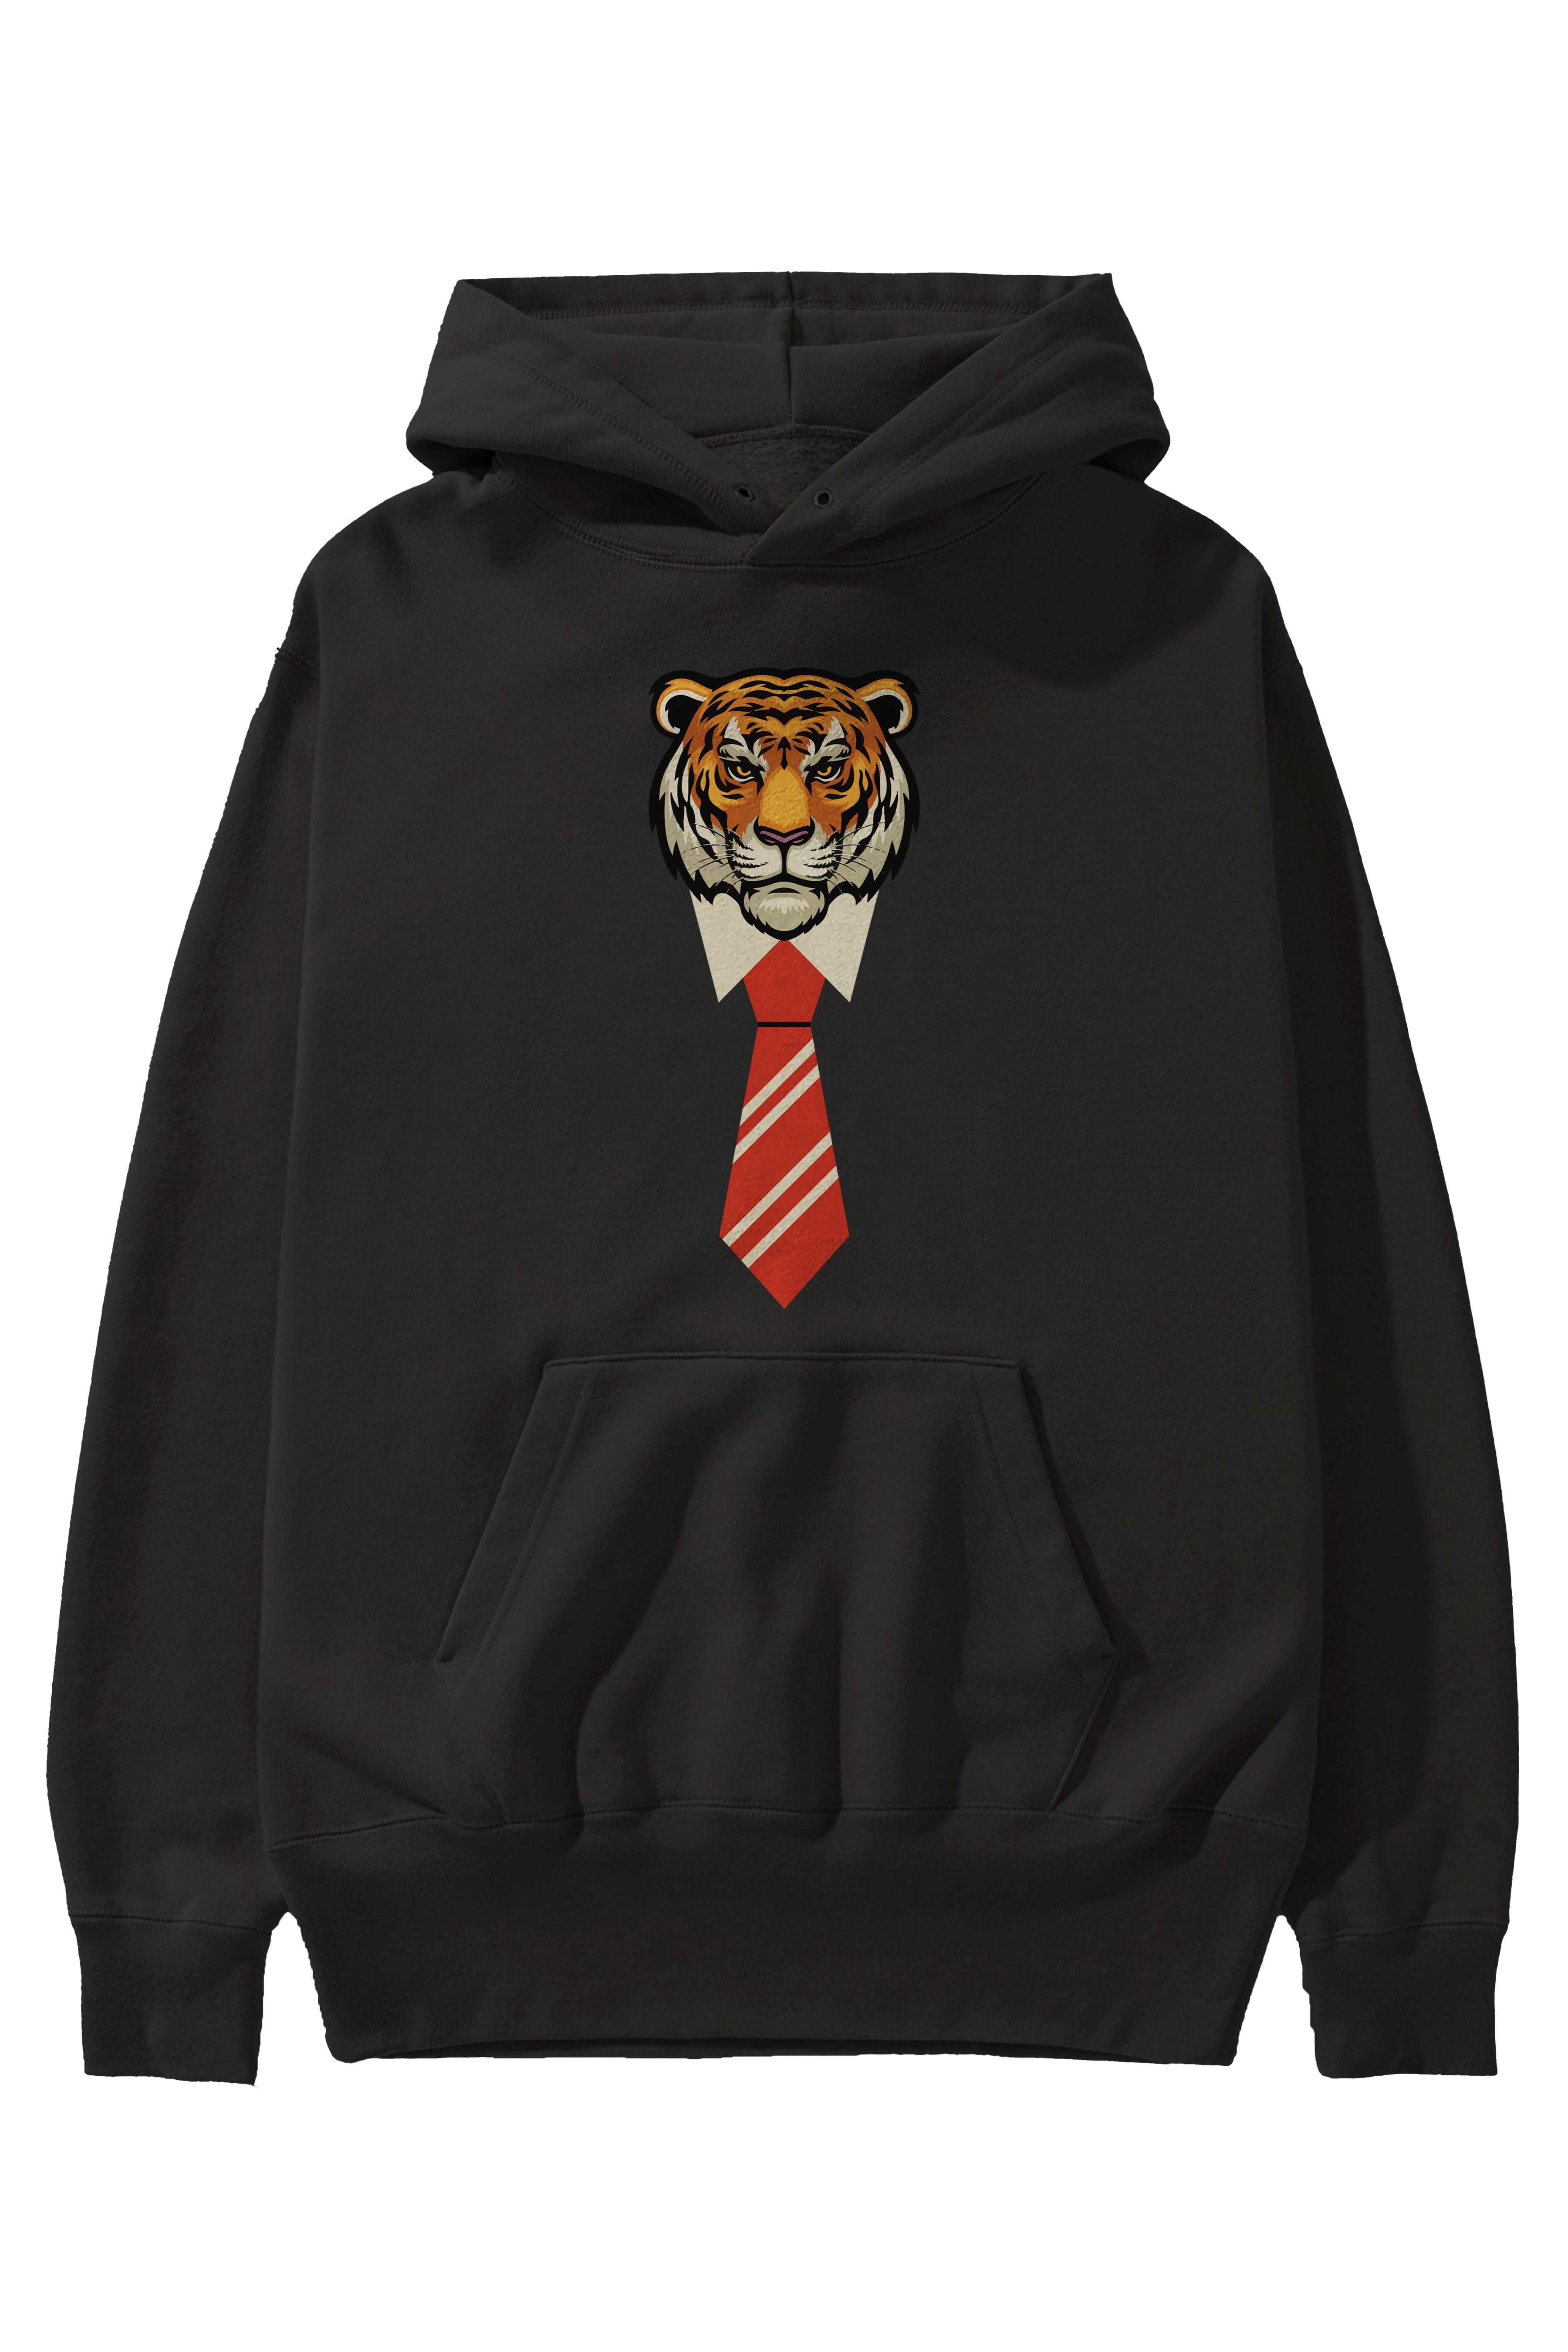 Tiger With Tie Ön Baskılı Oversize Hoodie Kapüşonlu Sweatshirt Erkek Kadın Unisex